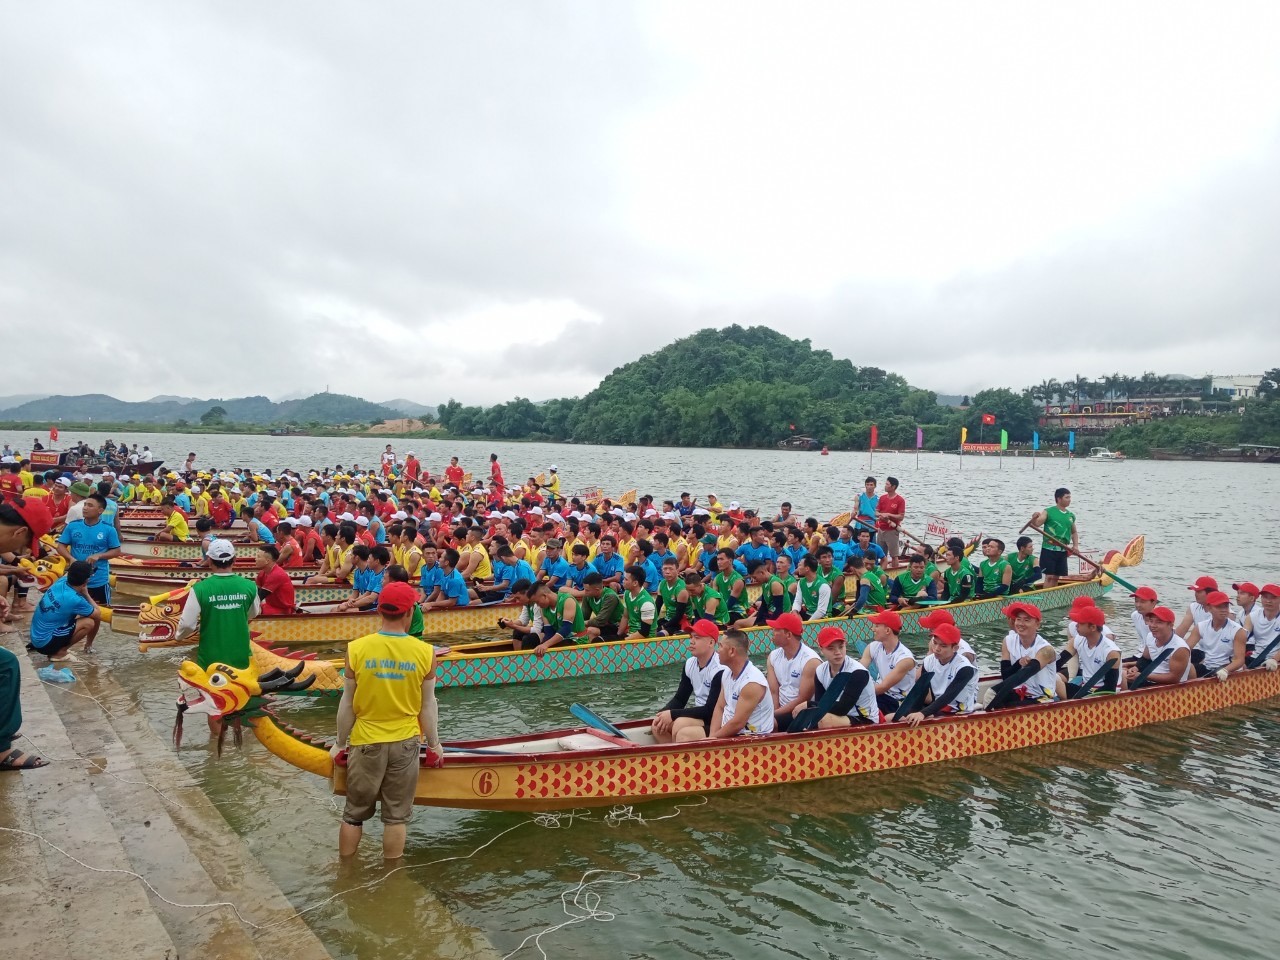 Sáng cùng ngày, tại huyện Tuyên Hóa cũng đã tổ chức Lễ hội đua thuyền trên sông Gianh. Ảnh: Cộng tác viên